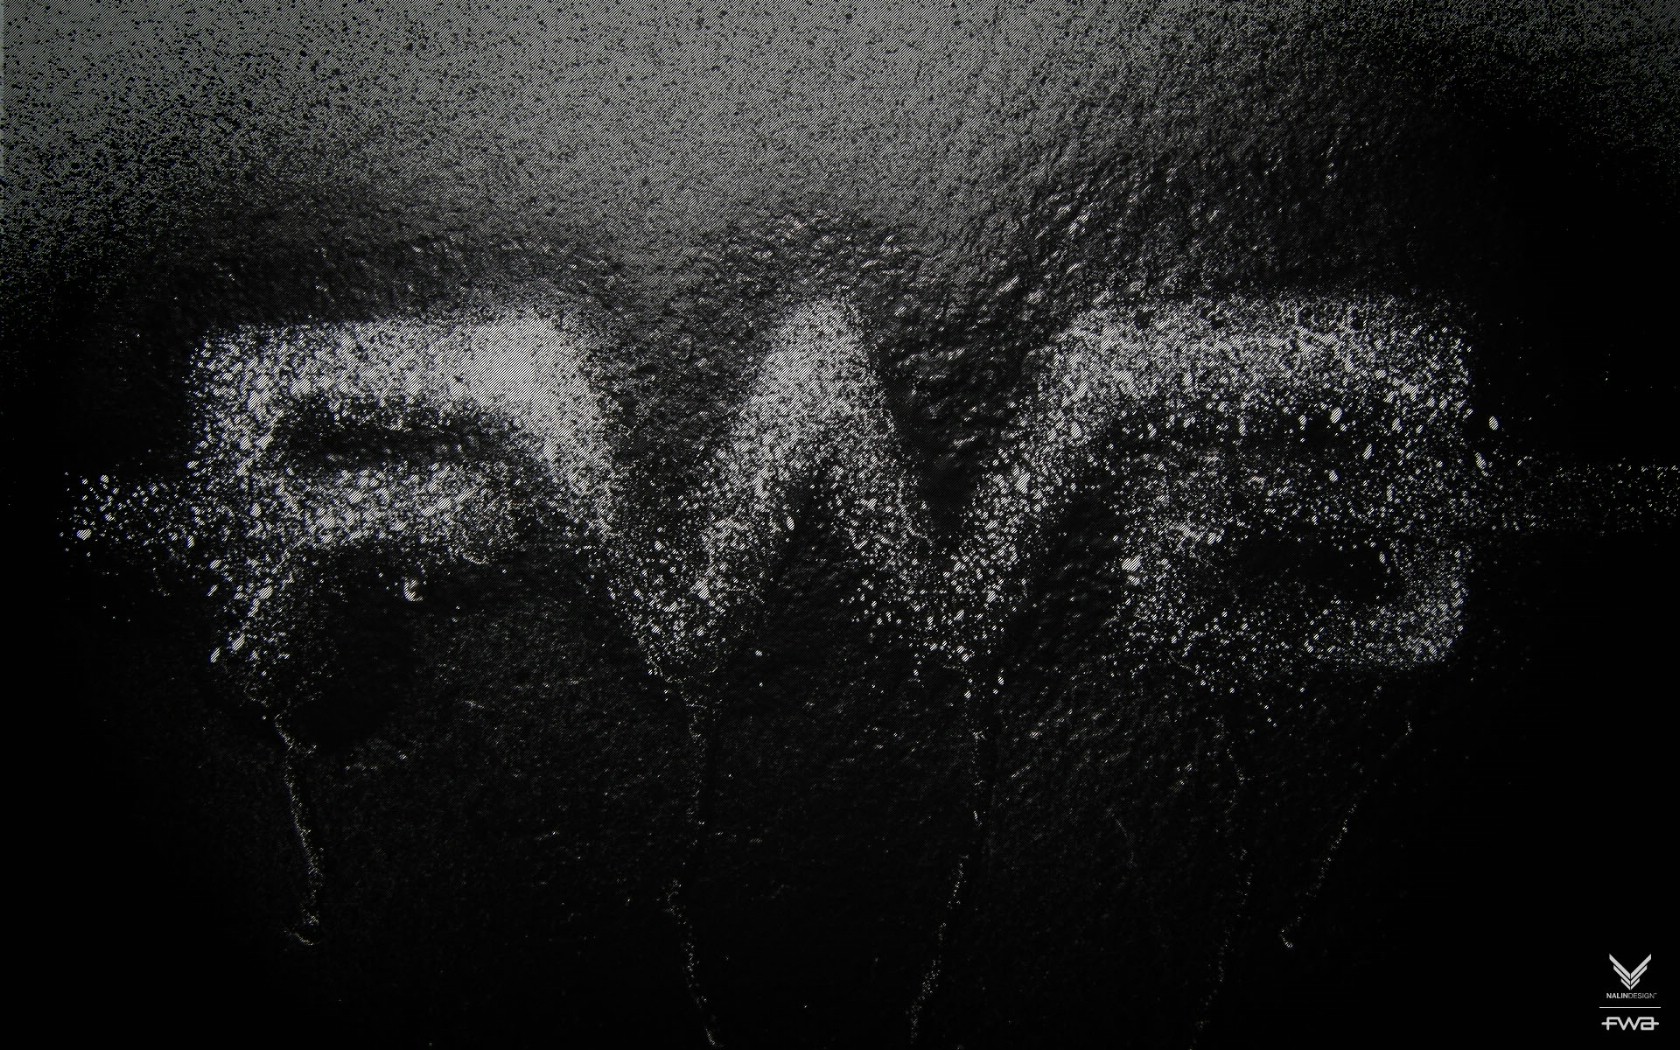 壁纸1680x1050FWA黑色专辑 1 11壁纸 其他品牌 FWA黑色专辑 第一辑壁纸 其他品牌 FWA黑色专辑 第一辑图片 其他品牌 FWA黑色专辑 第一辑素材 品牌壁纸 品牌图库 品牌图片素材桌面壁纸